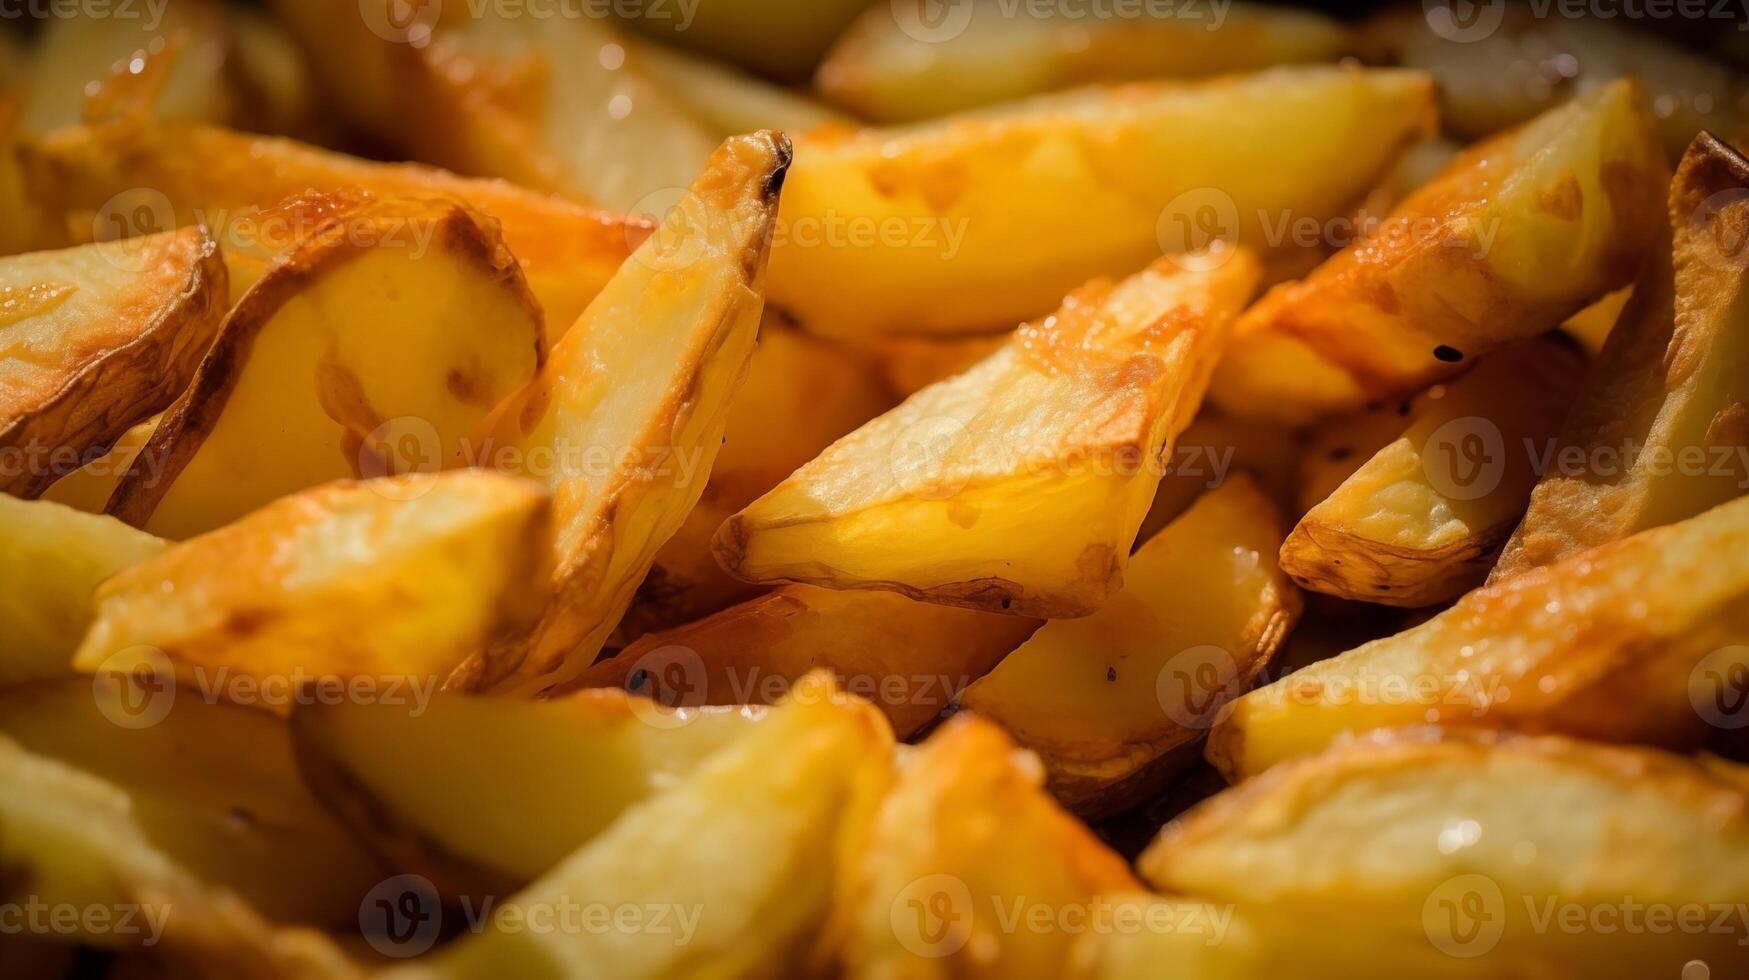 extreem detailopname van gebakken aardappelen. voedsel fotografie foto